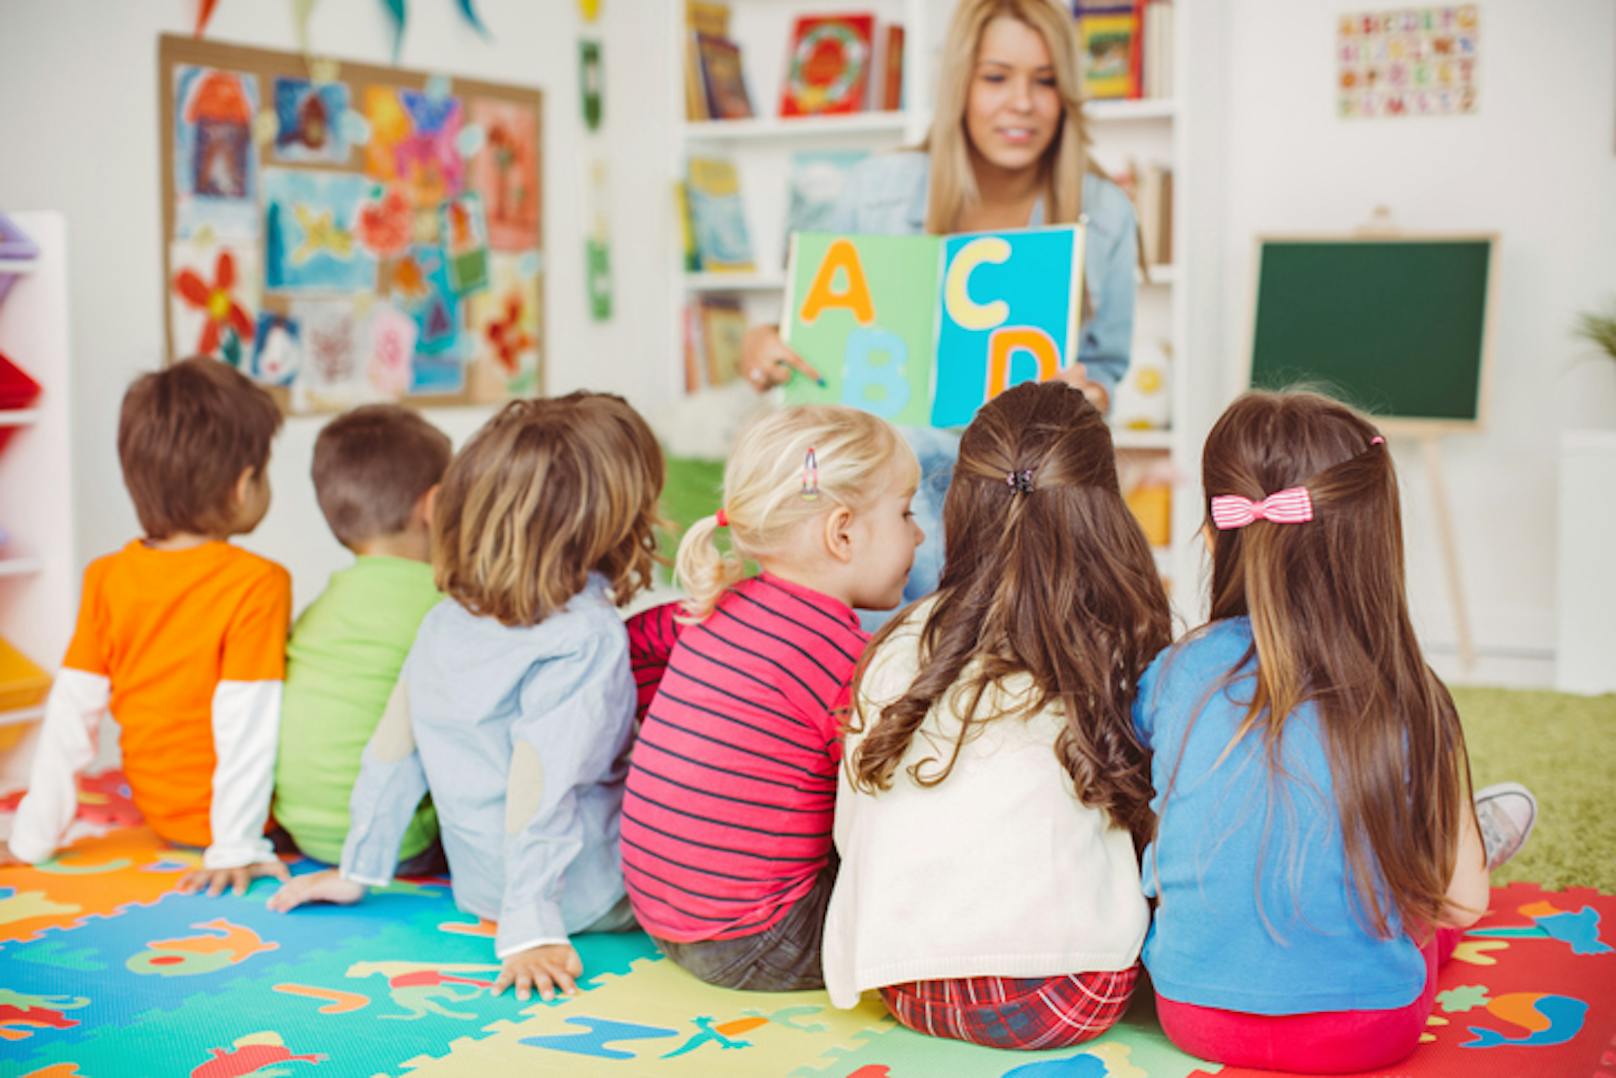 Das Ansteckungsrisiko im Kindergarten scheint relativ gering zu sein, wie eine neue Studie ermittelt. <br>